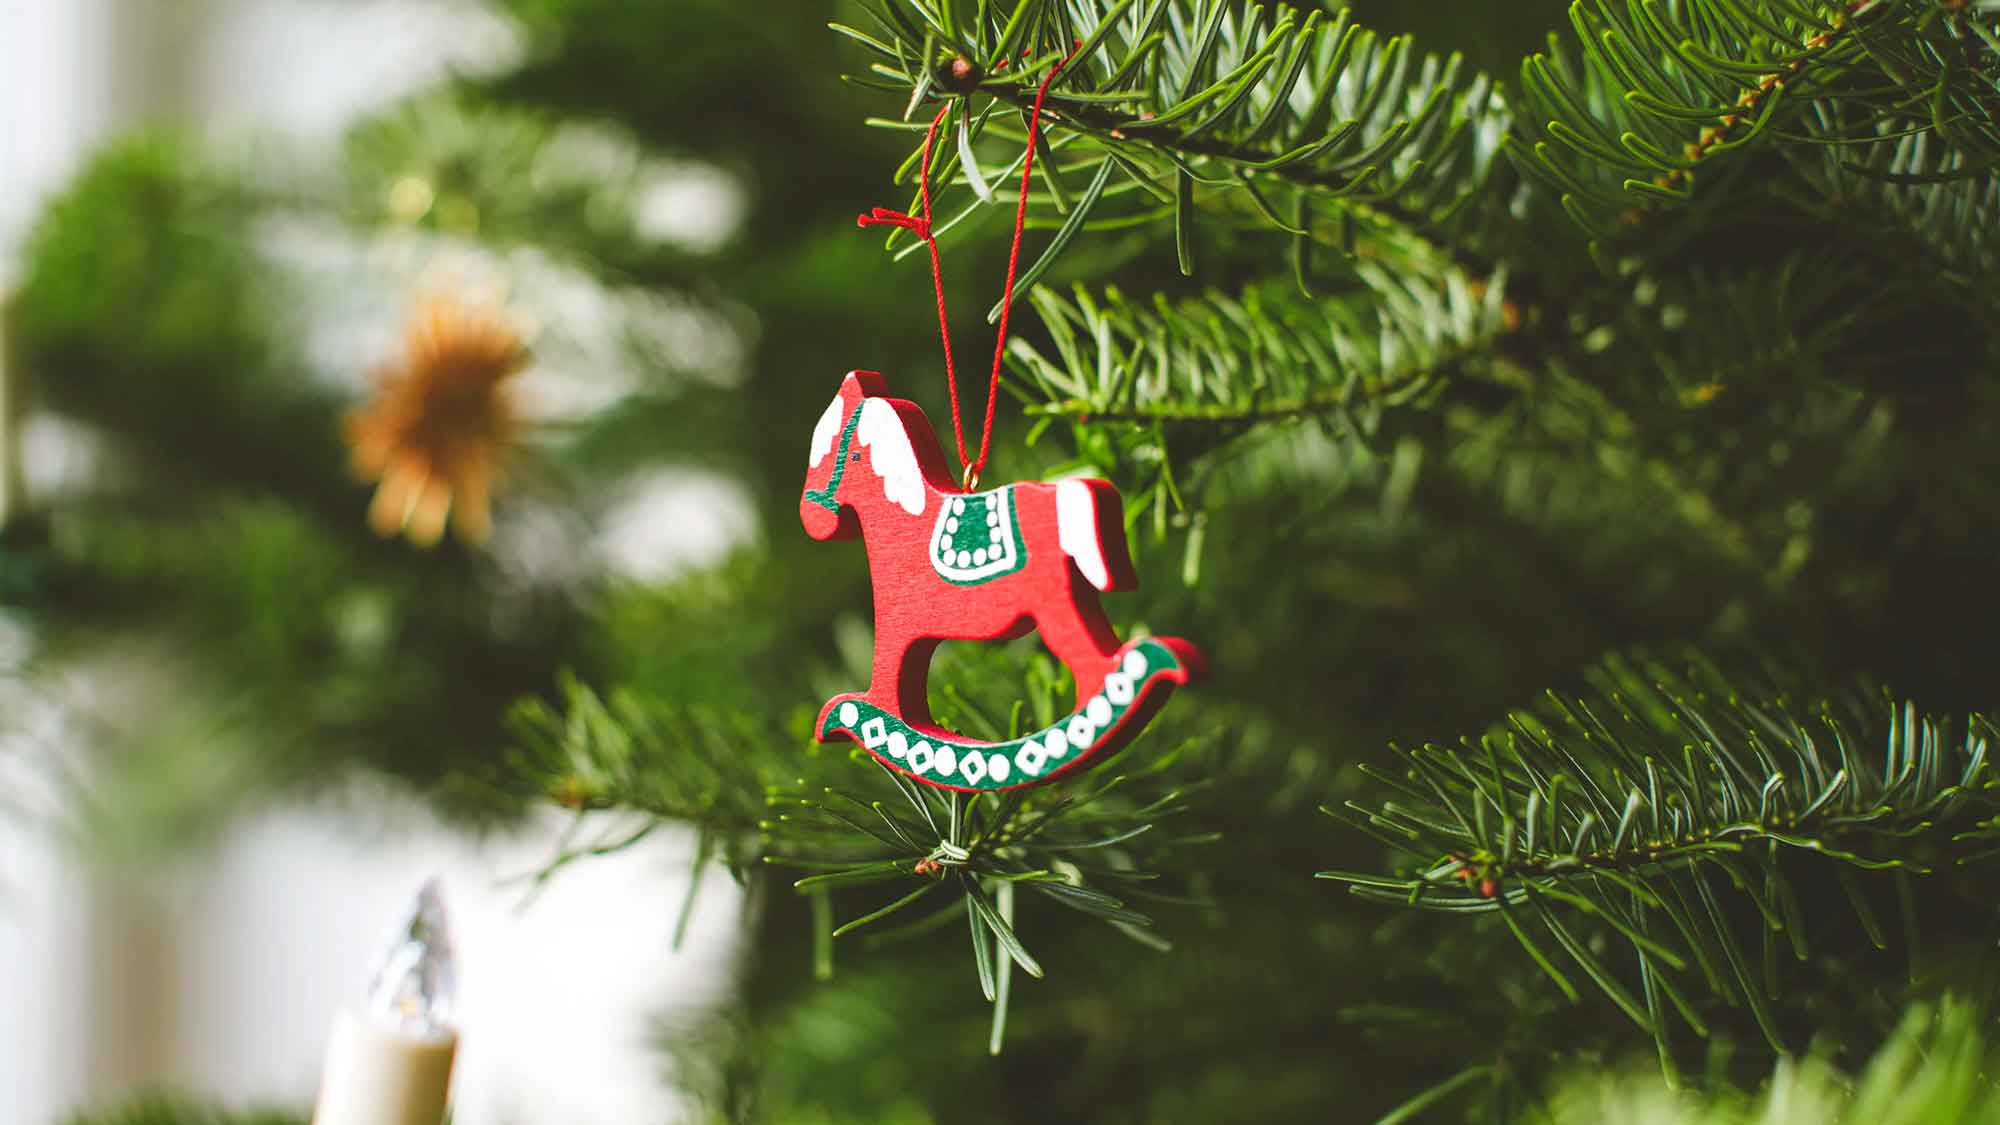 TÜV Verband: O Plastikbaum – Tipps für eine nachhaltige Weihnachtszeit